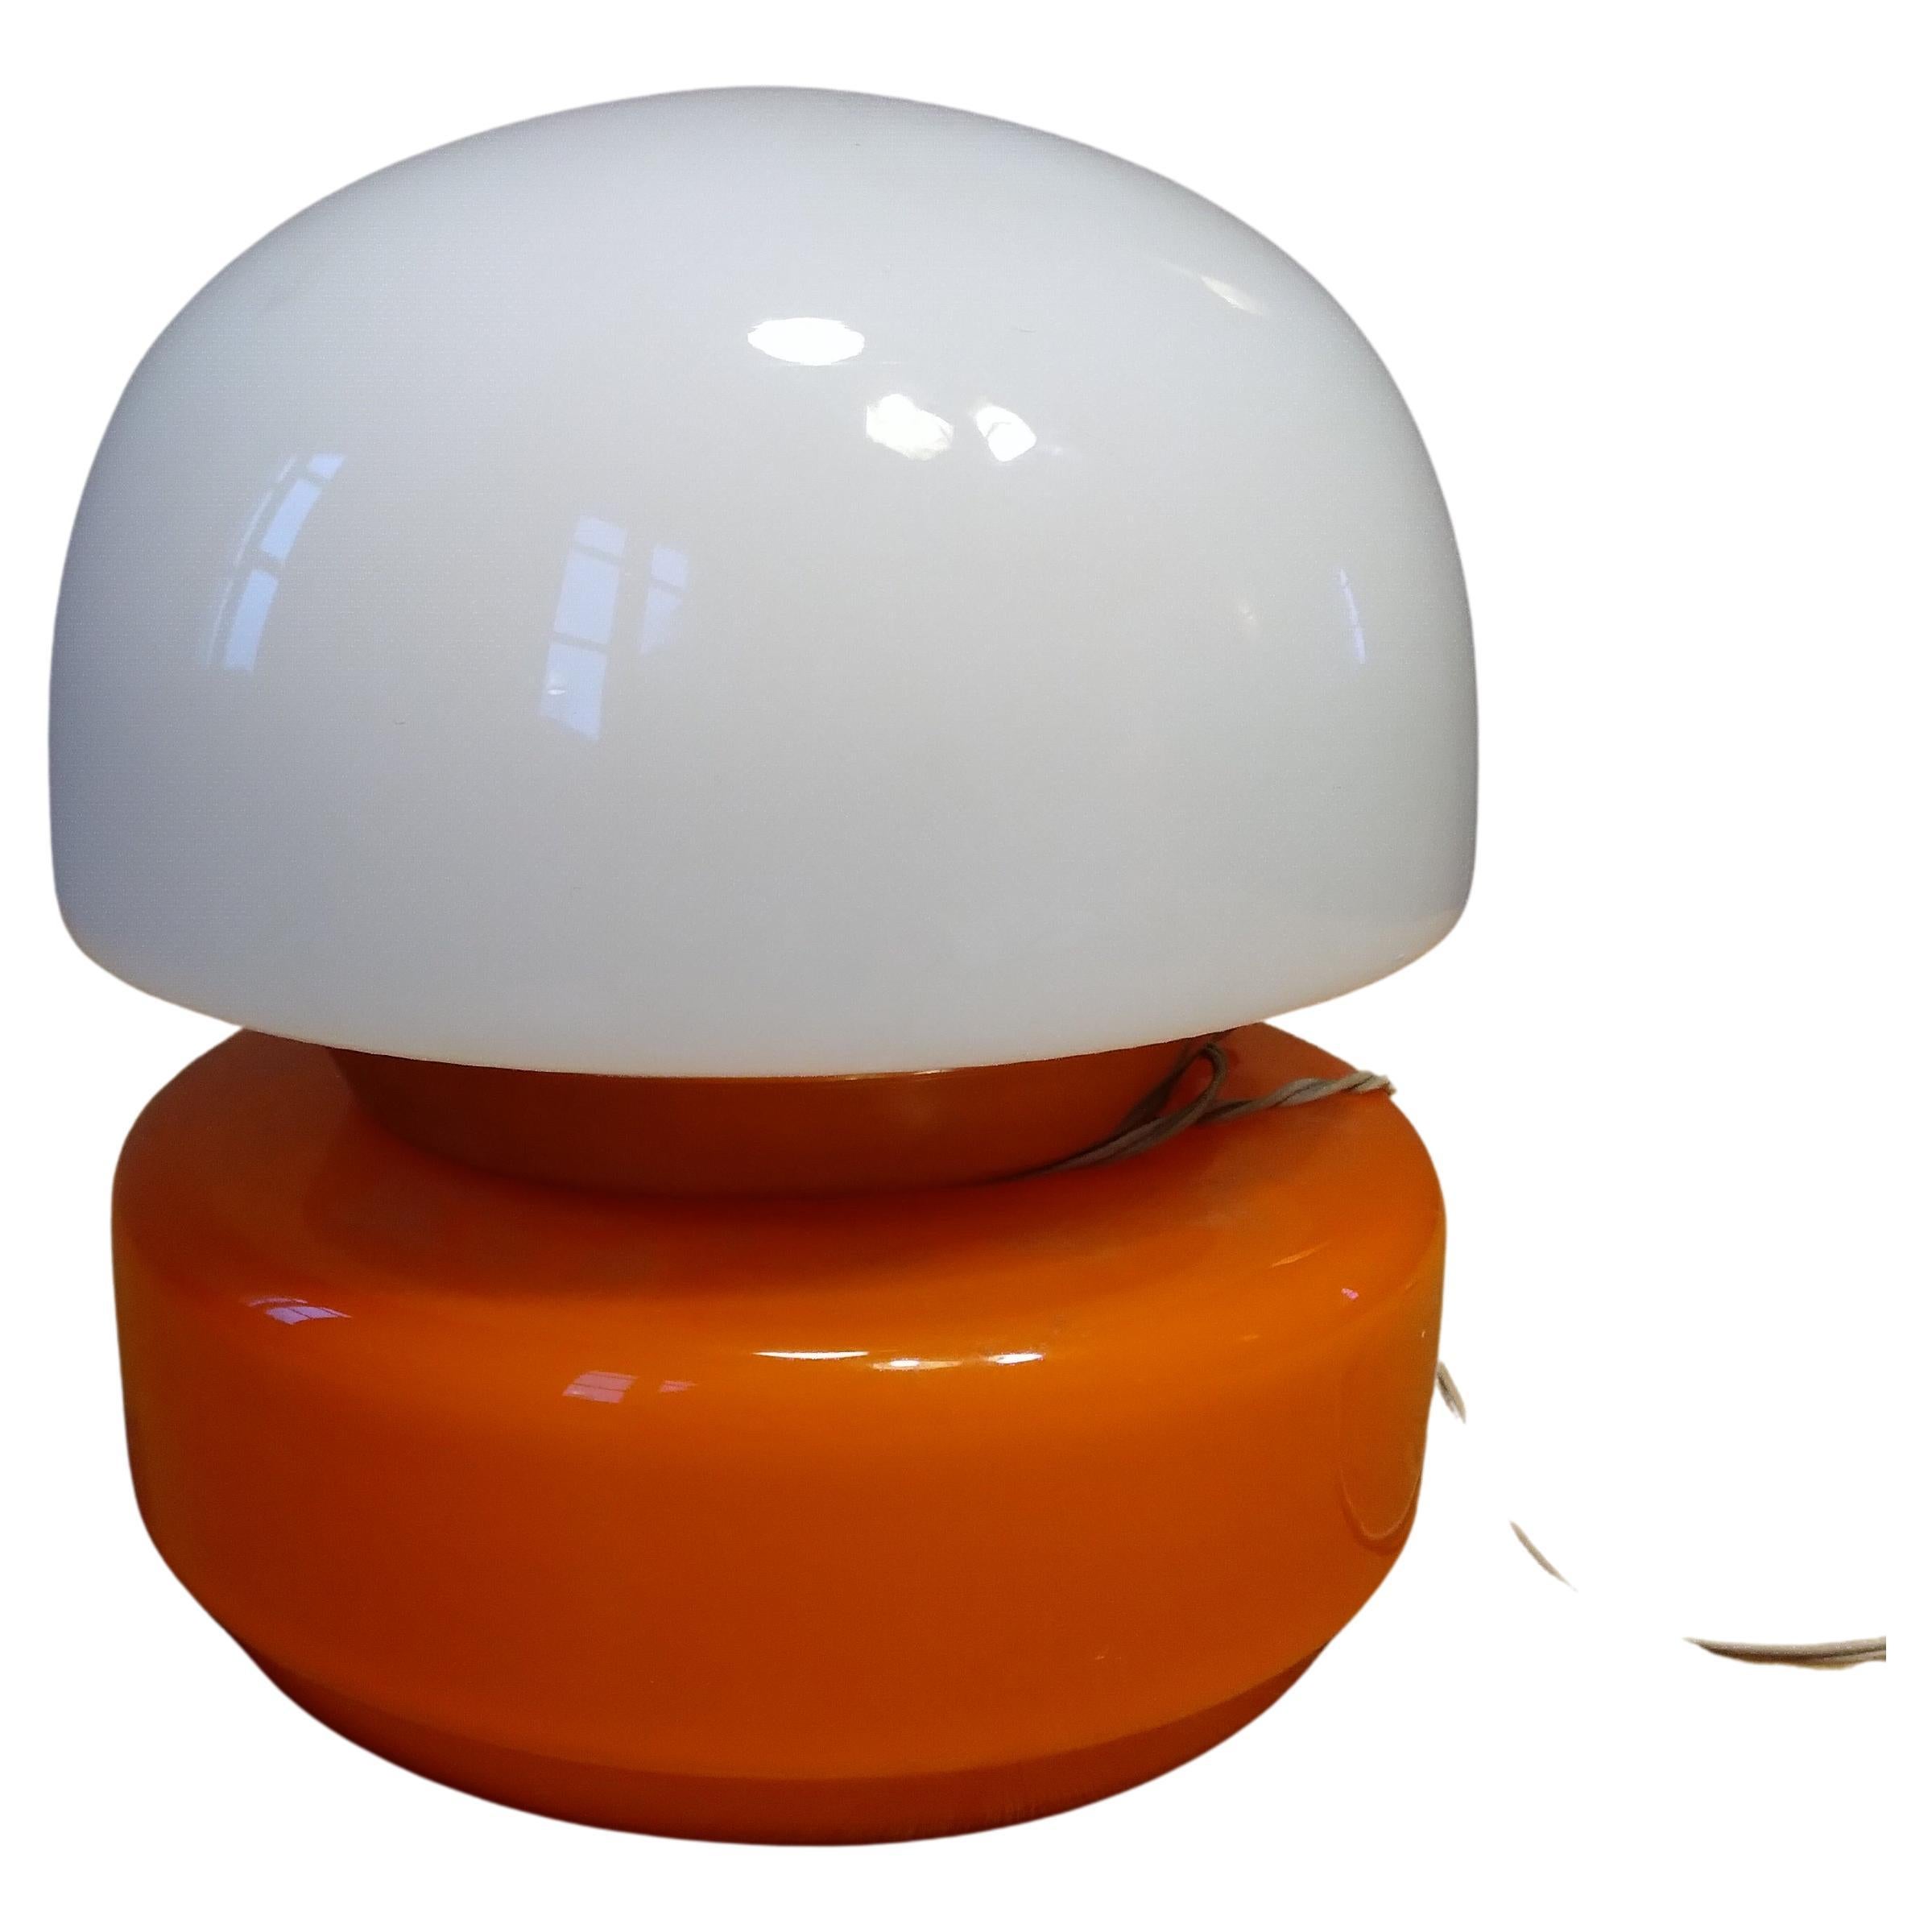 Lampe de table Space Age en verre artistique orange et blanc Italie 1960 .
Lampe fantastique, couleur étonnante. 